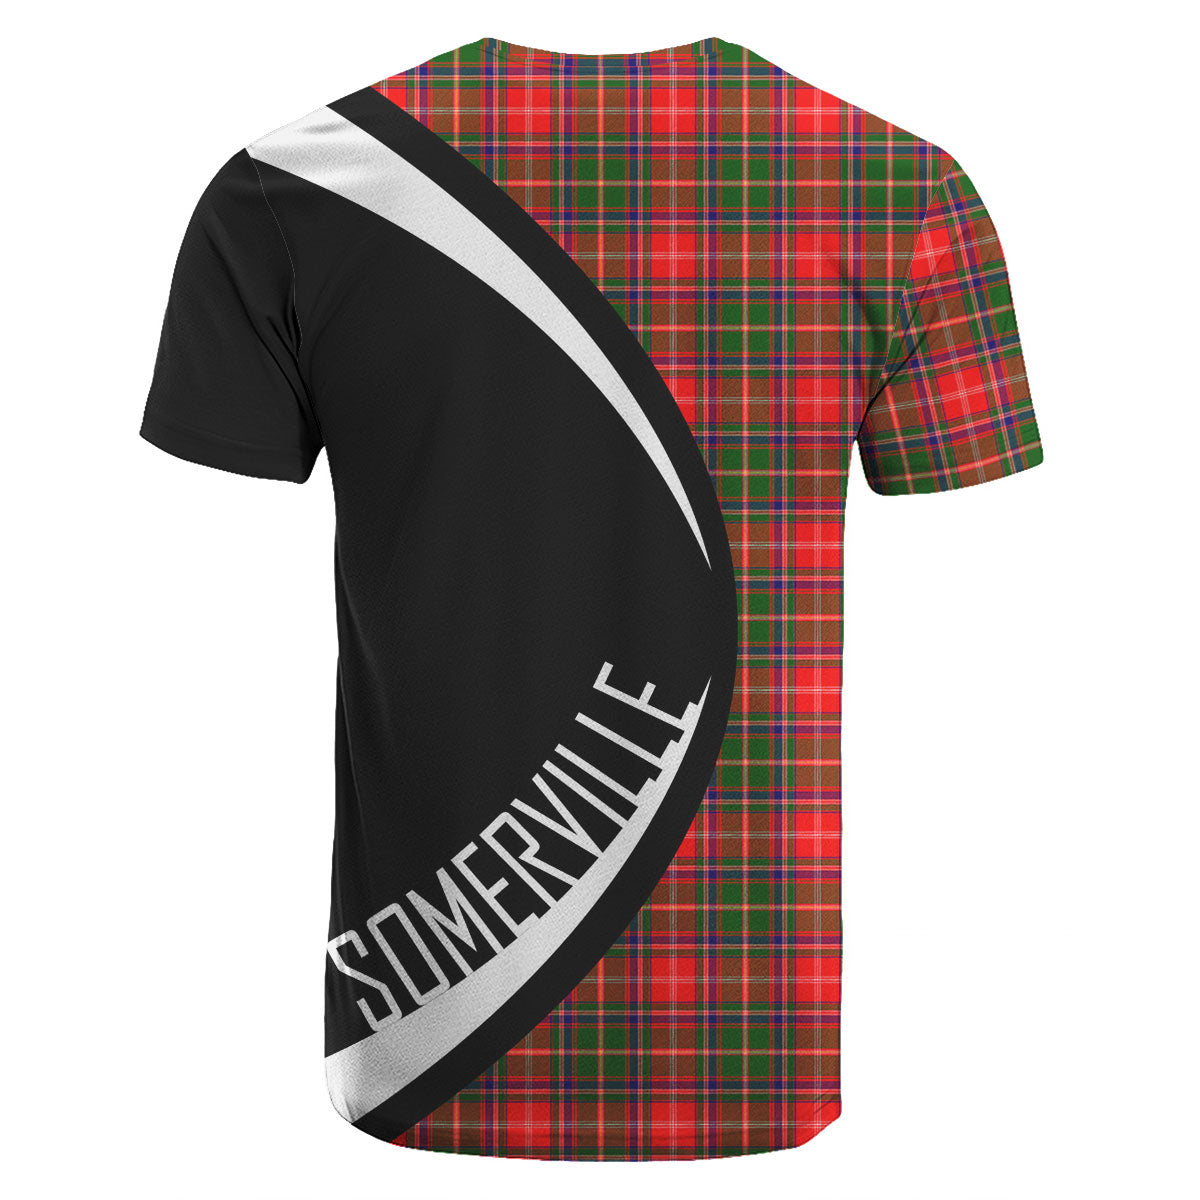 Somerville Tartan Crest T-shirt - Circle Style